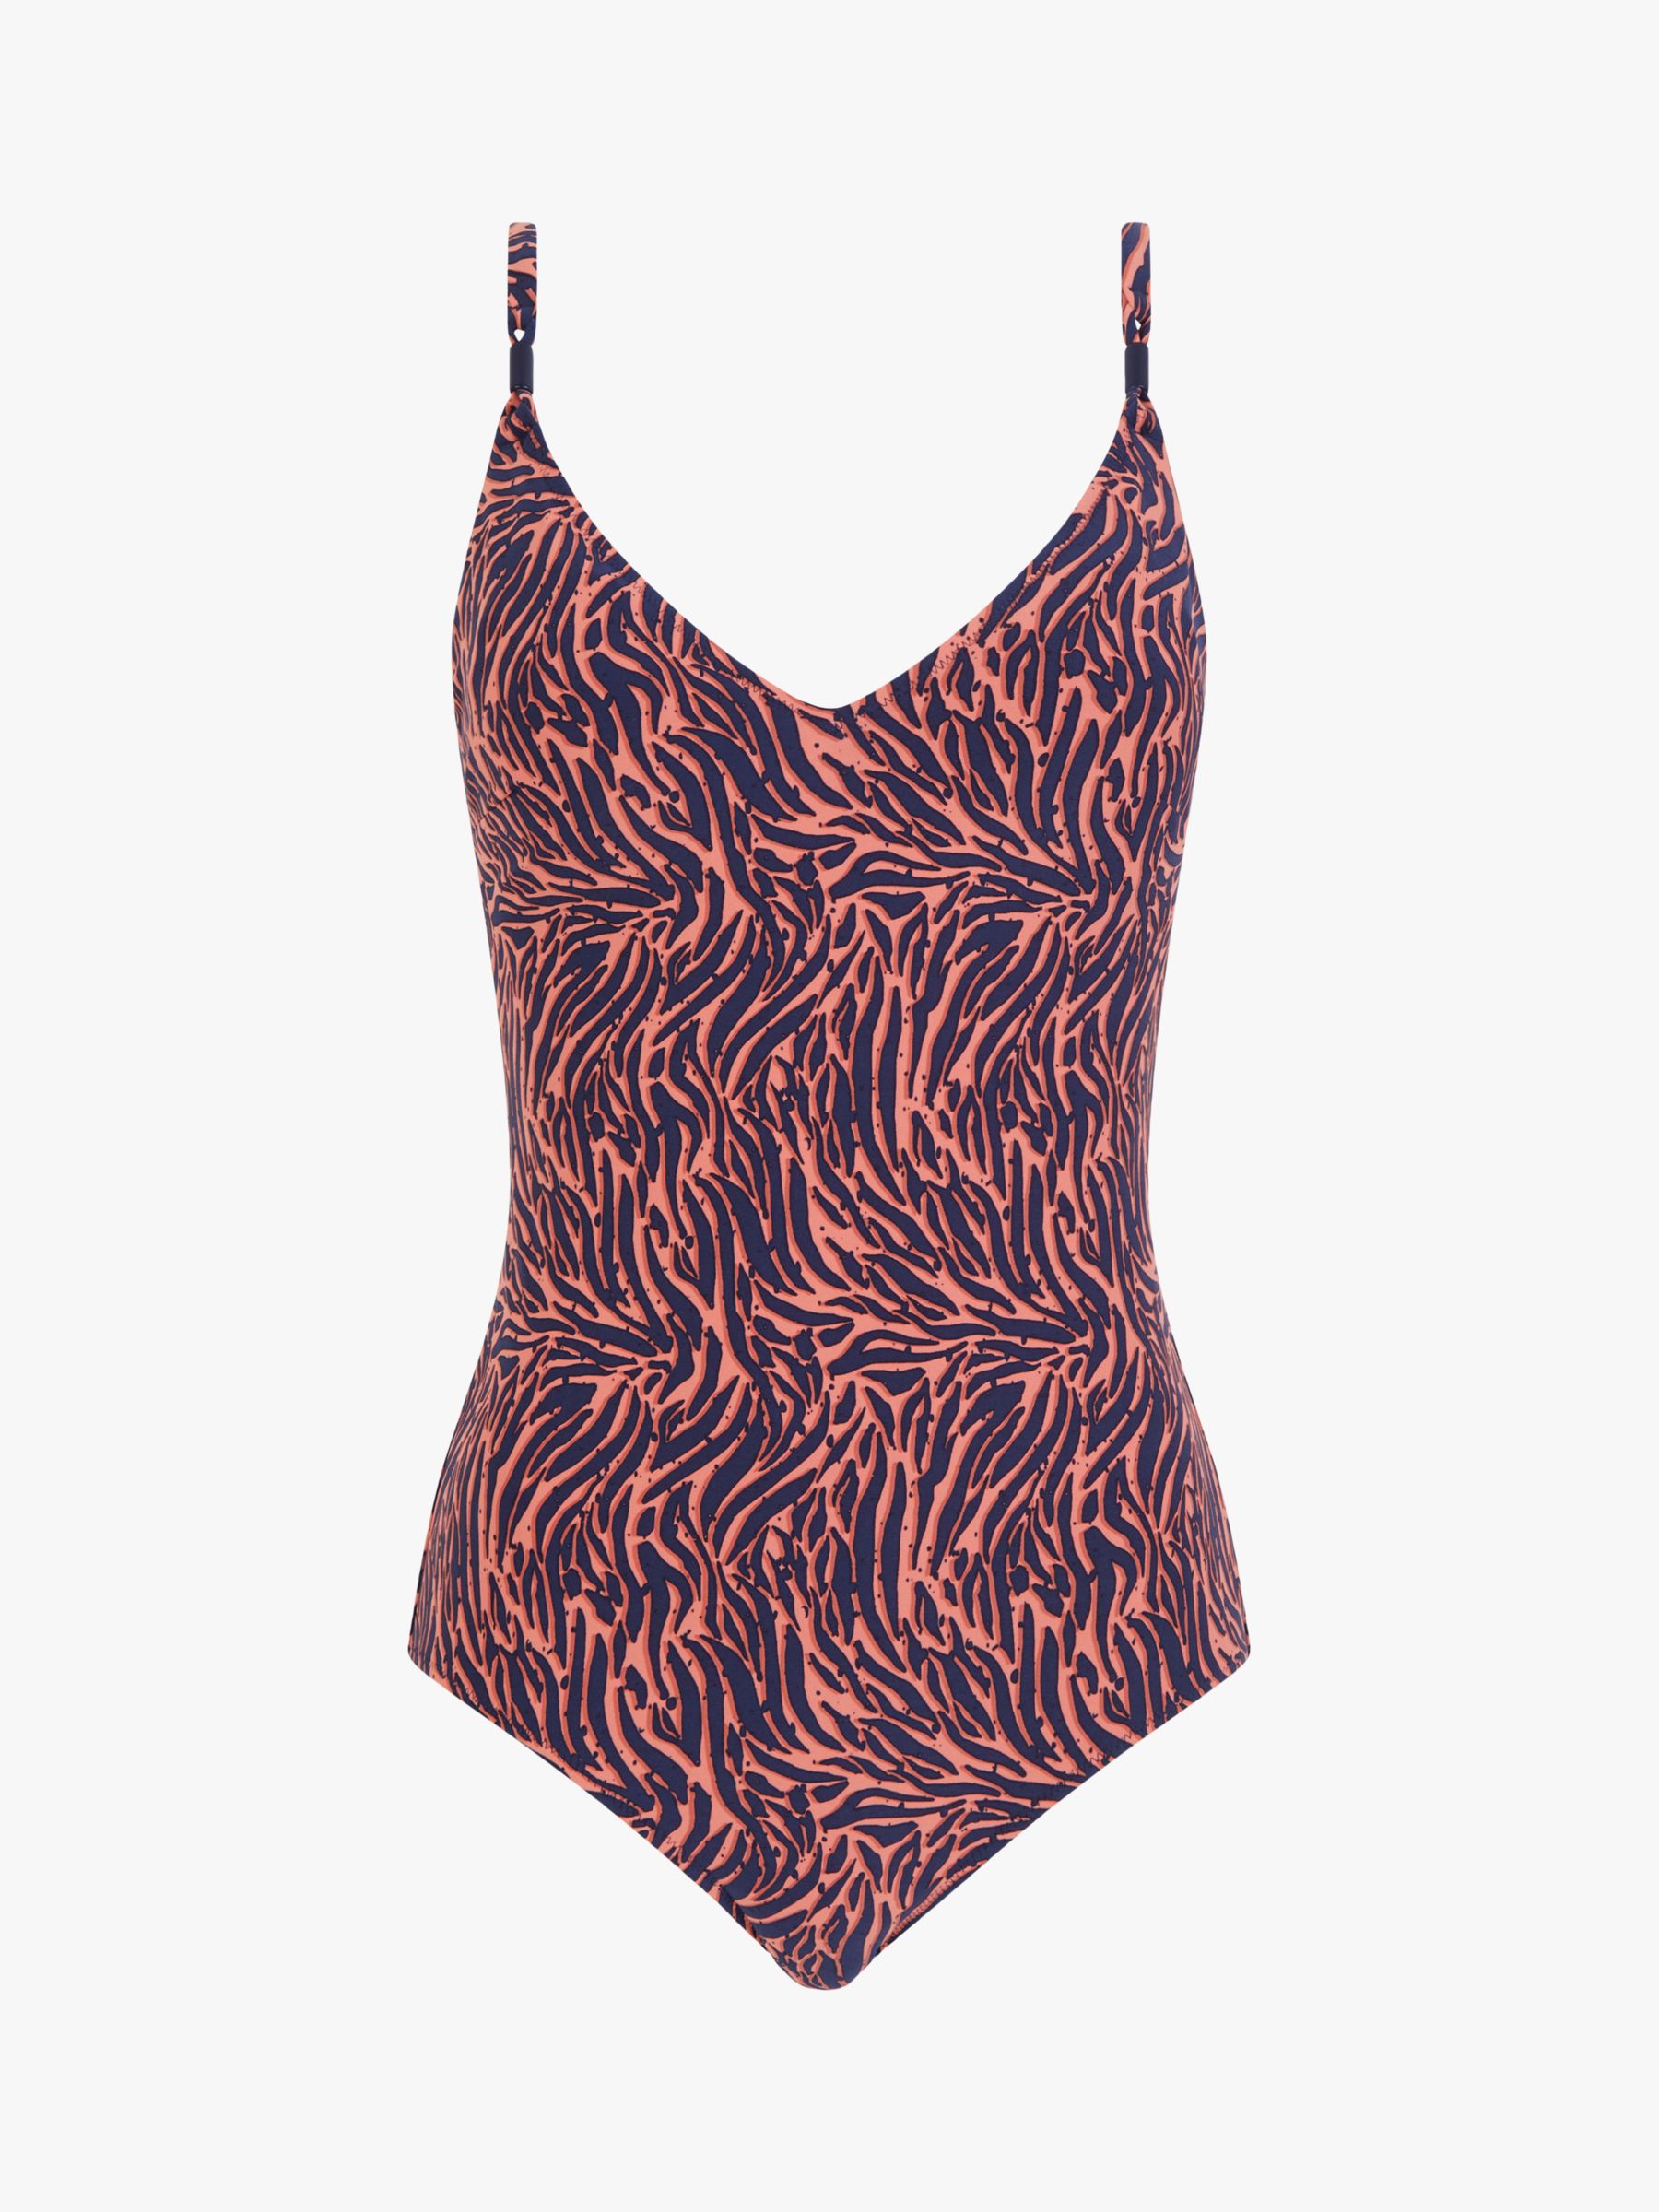 Femilet Tidra Zebra Print Swimsuit, Coral/Multi, S